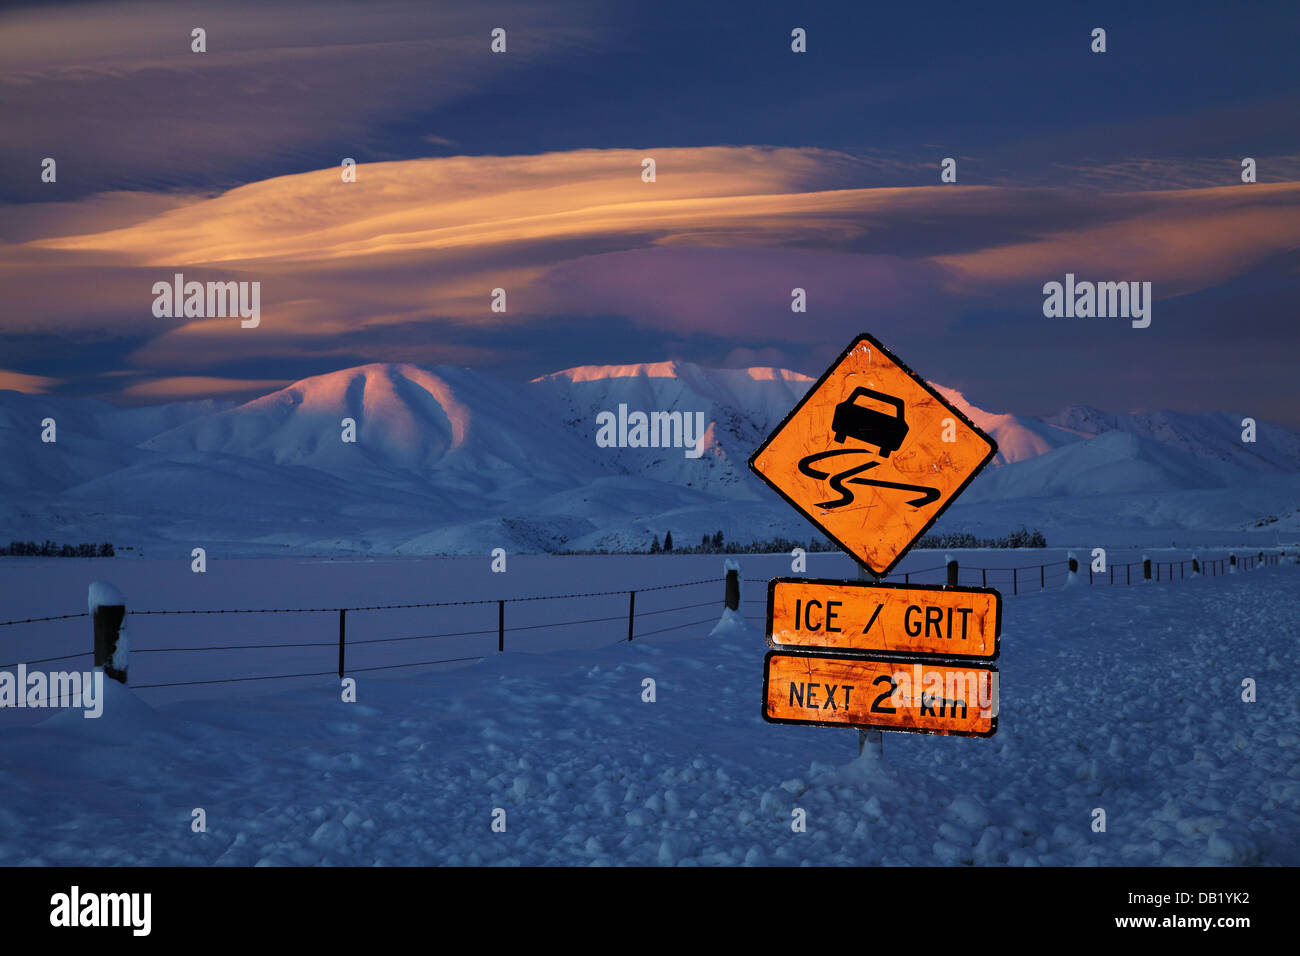 Route glacée panneau d'avertissement et l'alpenglow sur gamme Hawkdun, et nuages lenticulaires, Maniototo, Central Otago, île du Sud, Nouvelle-Zélande Banque D'Images